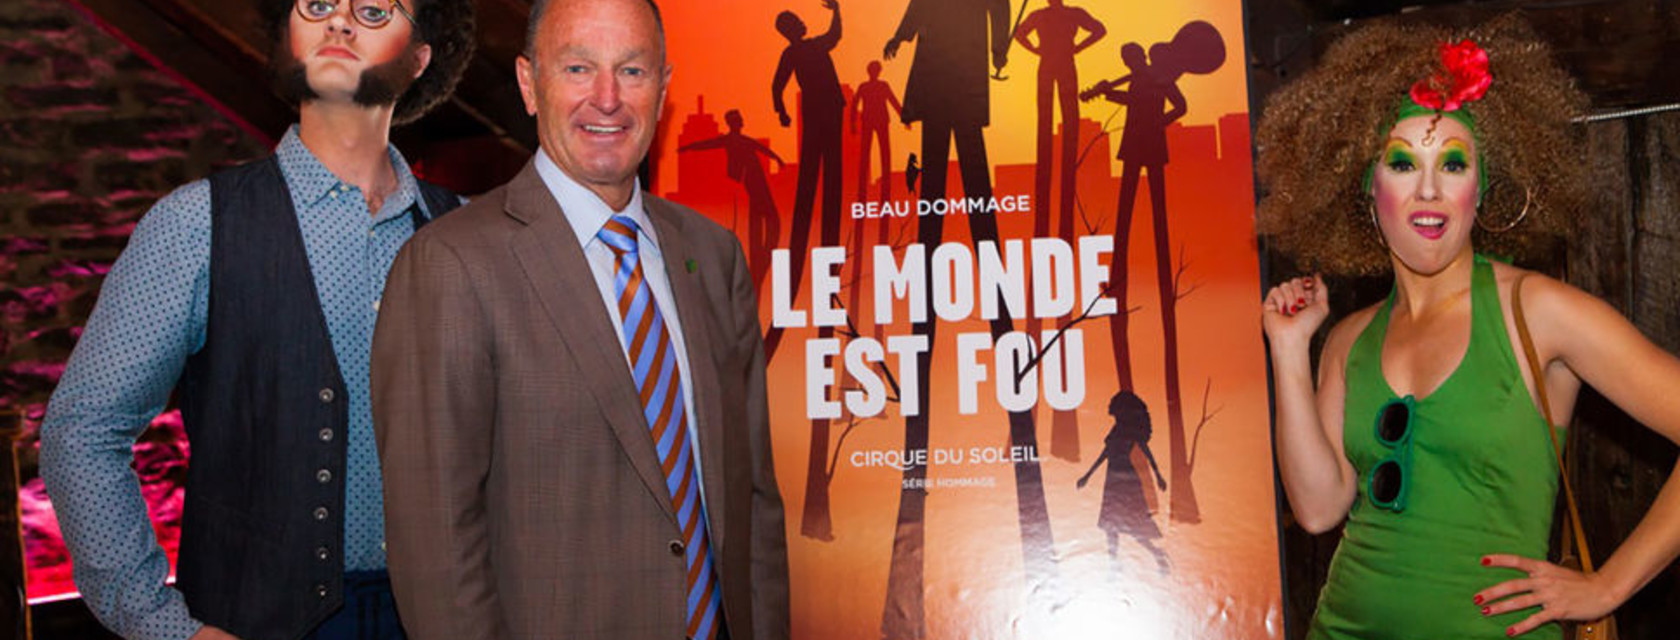 Cirque du Soleil unveils details of the show Le Monde est Fou